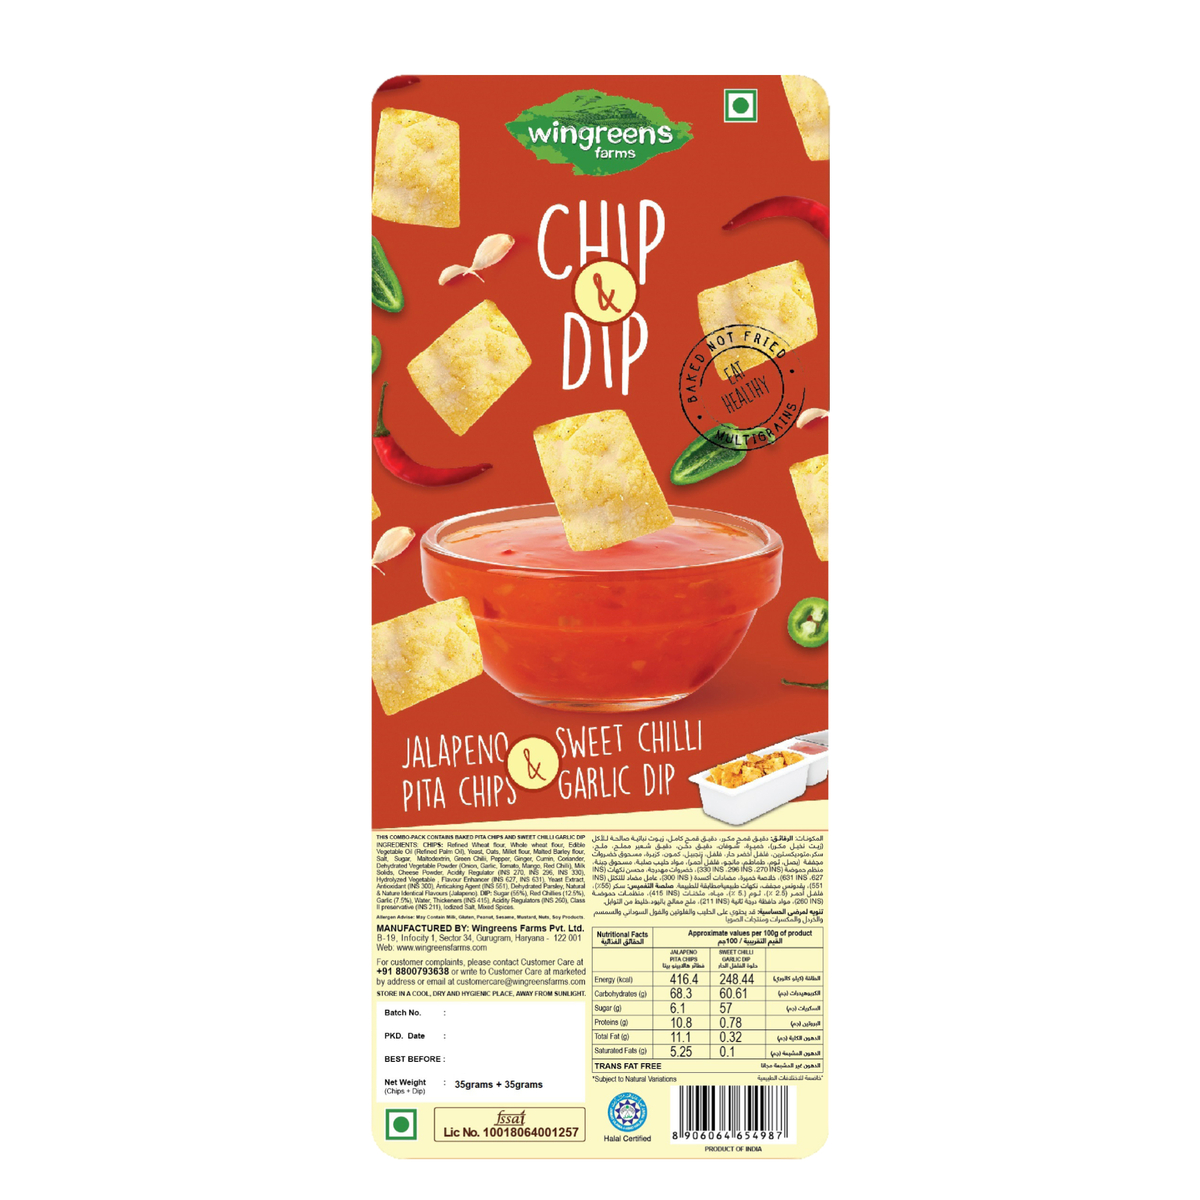 Wingreens Farms Chip & Dip Jalapeno Pita Chips & Sweet Chilli Garlic Dip 70g